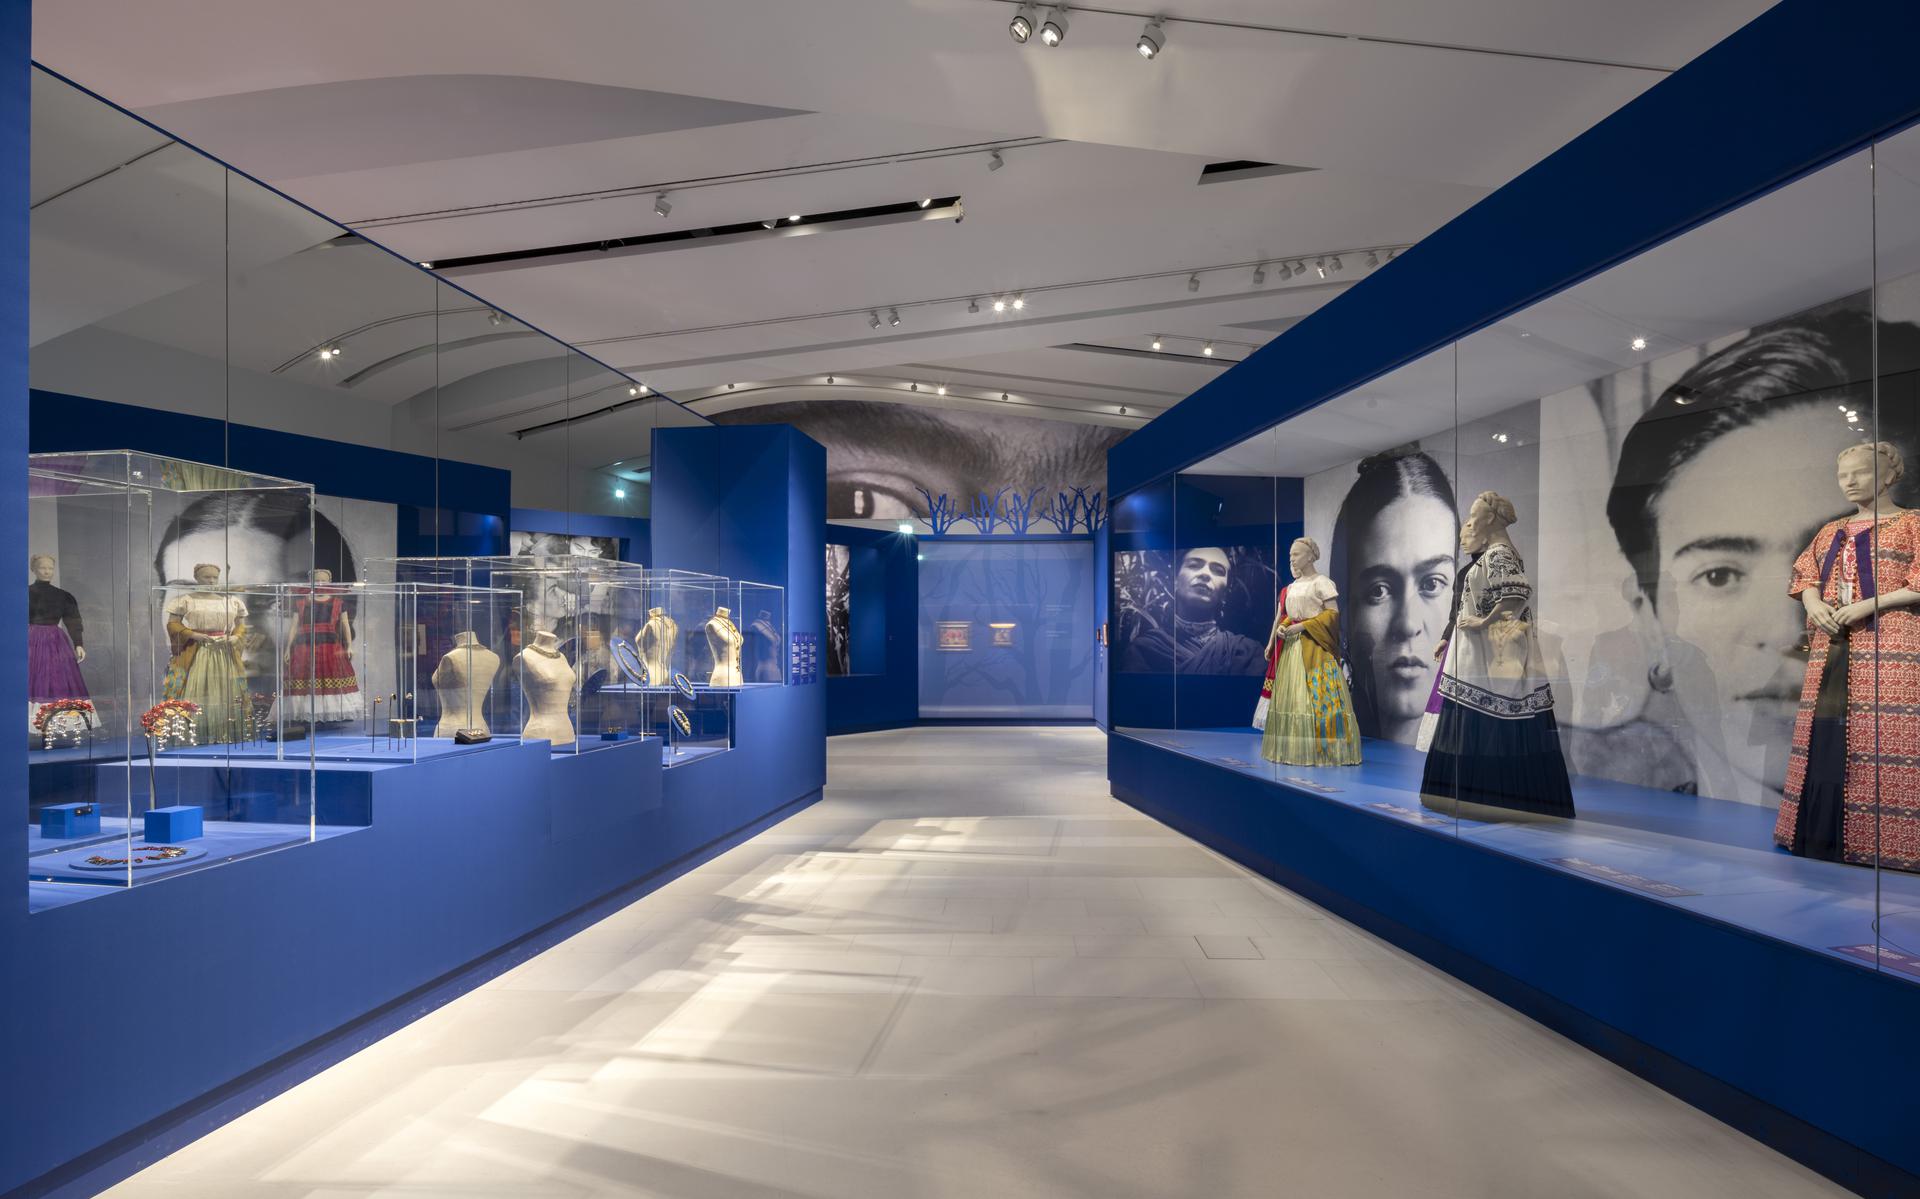 Frida Kahlotentoonstelling in Drents Museum met drie weken verlengd